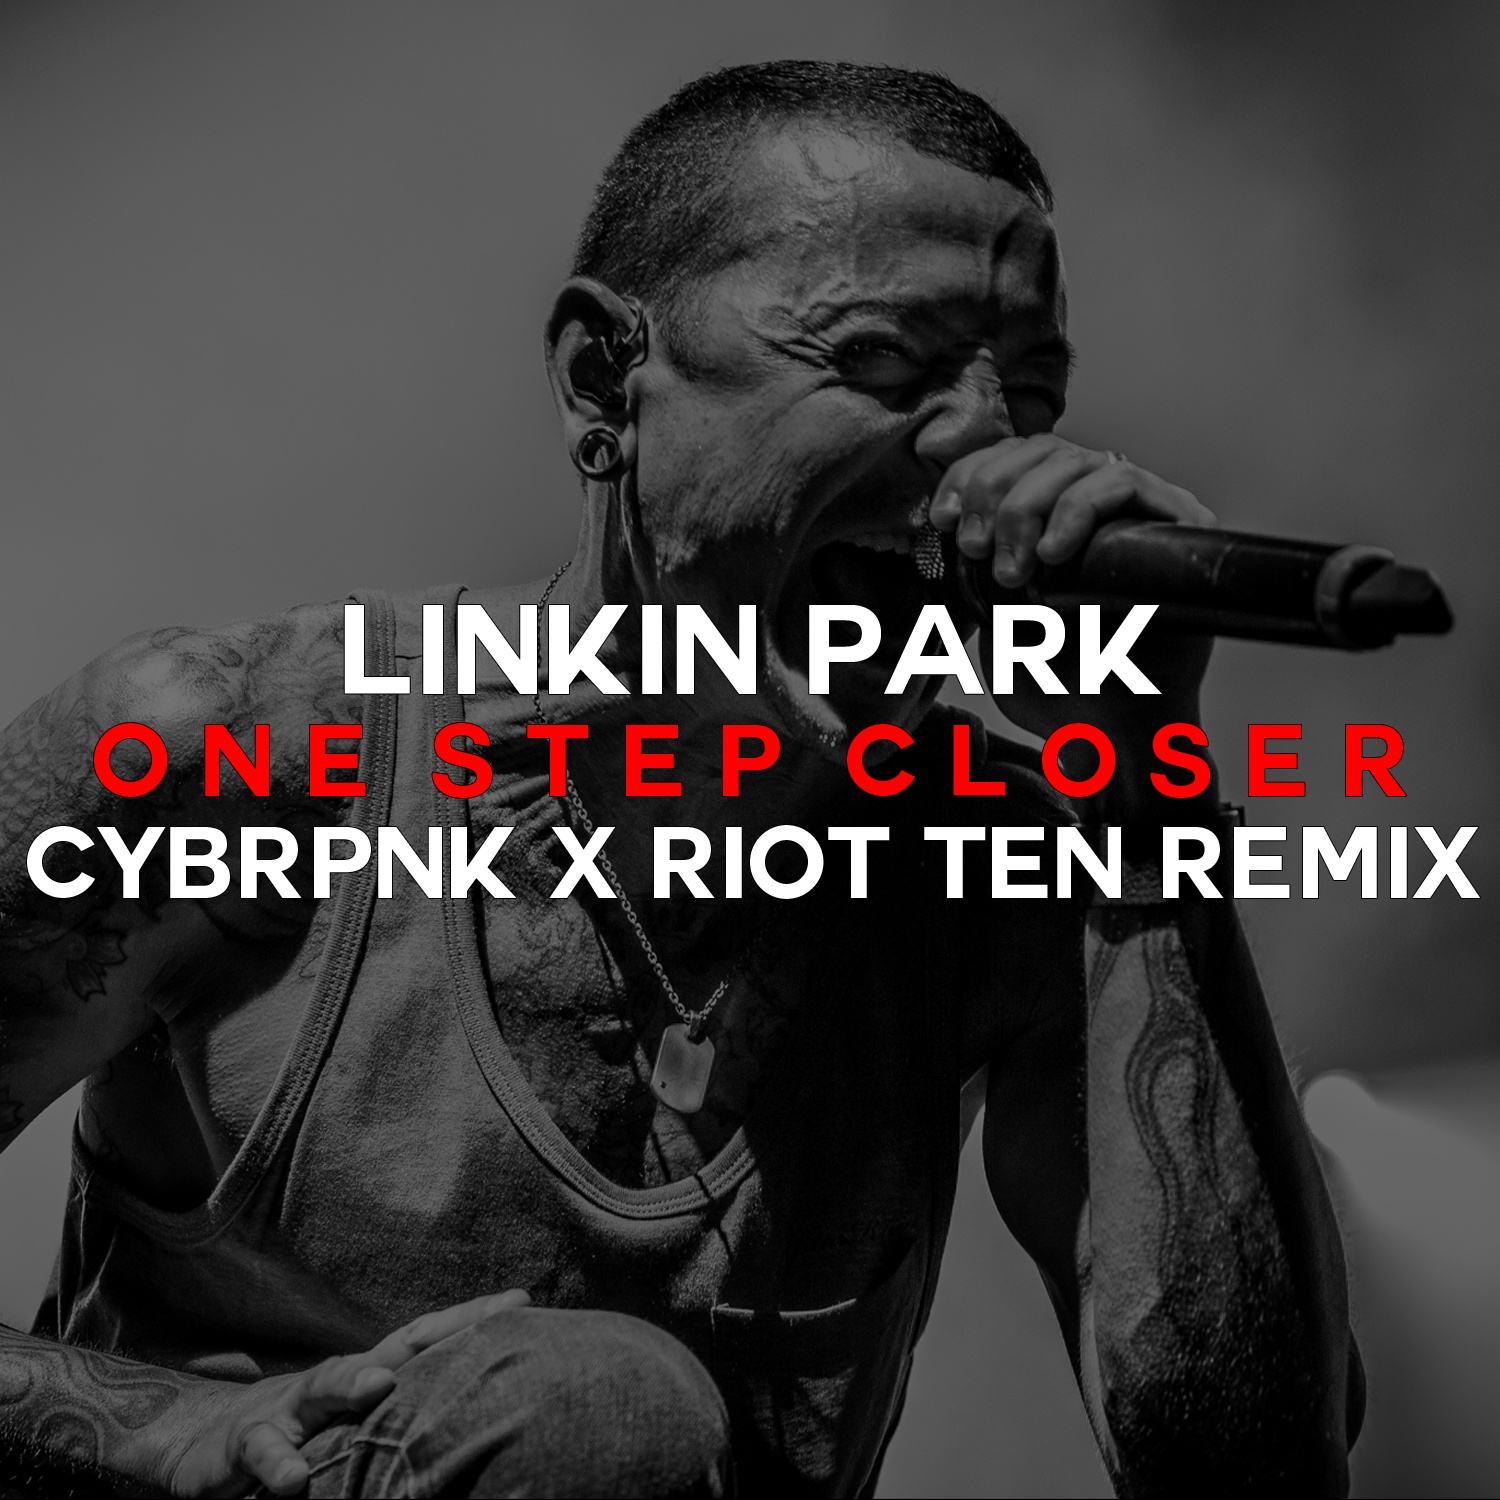 One Step Closer (CYBRPNK x Riot Ten Remix)